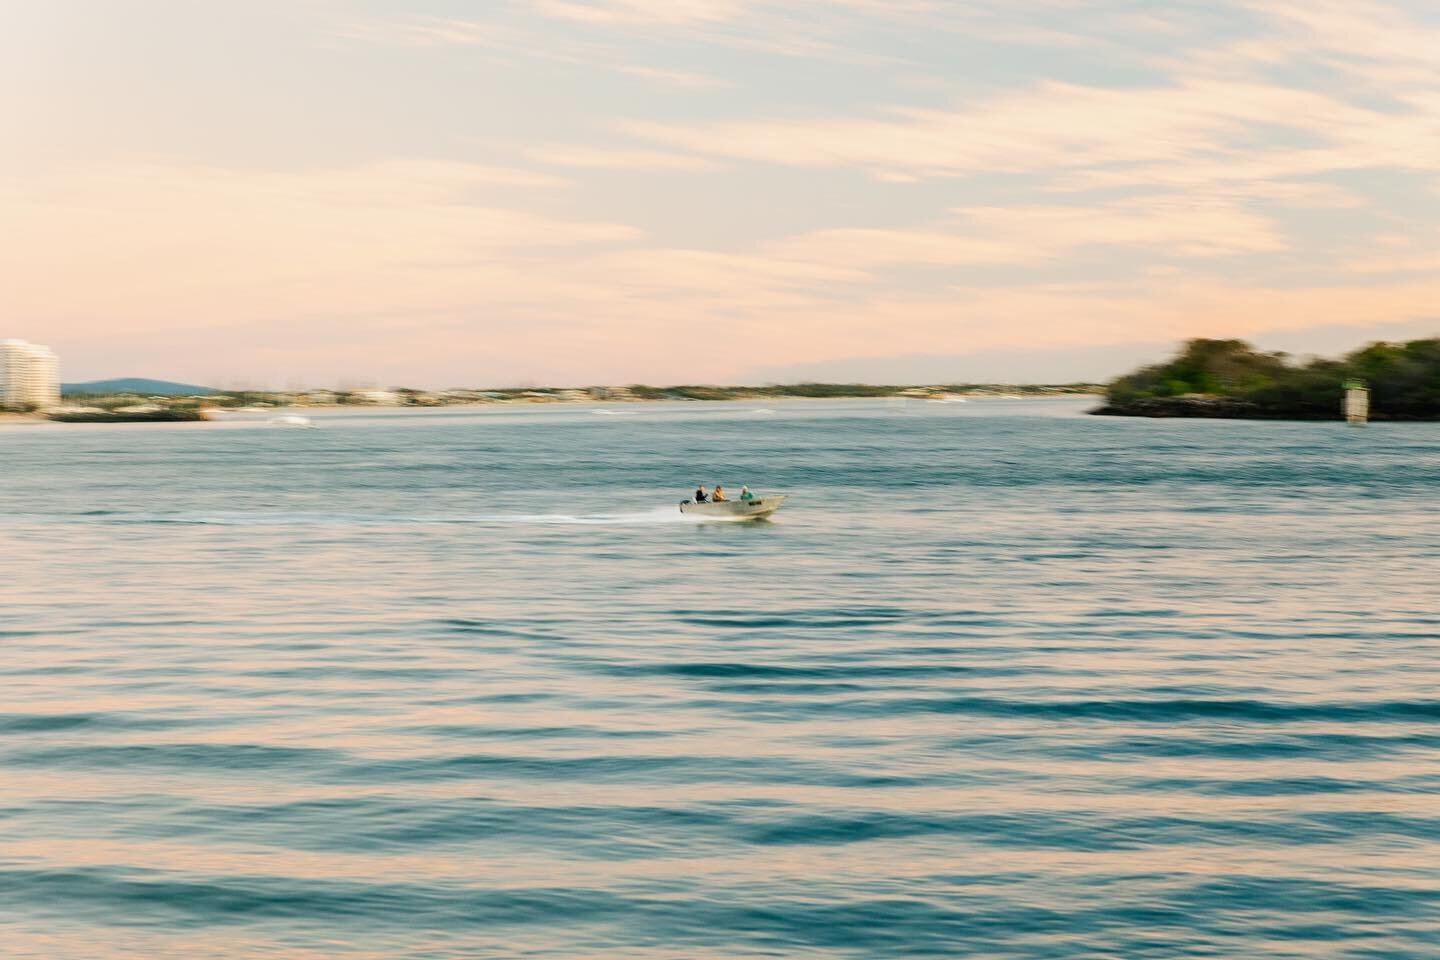 Couple of boat panning shots 🛥️ 
.
.
.
.
.

#photography #landscapephotography #seascape #landscape #seascapephotography #povphotography #youtube #canonaustralia #canonphotography #canonr6 #photooftheday #sunrise #opticalwander #cpphotos #puregoldco